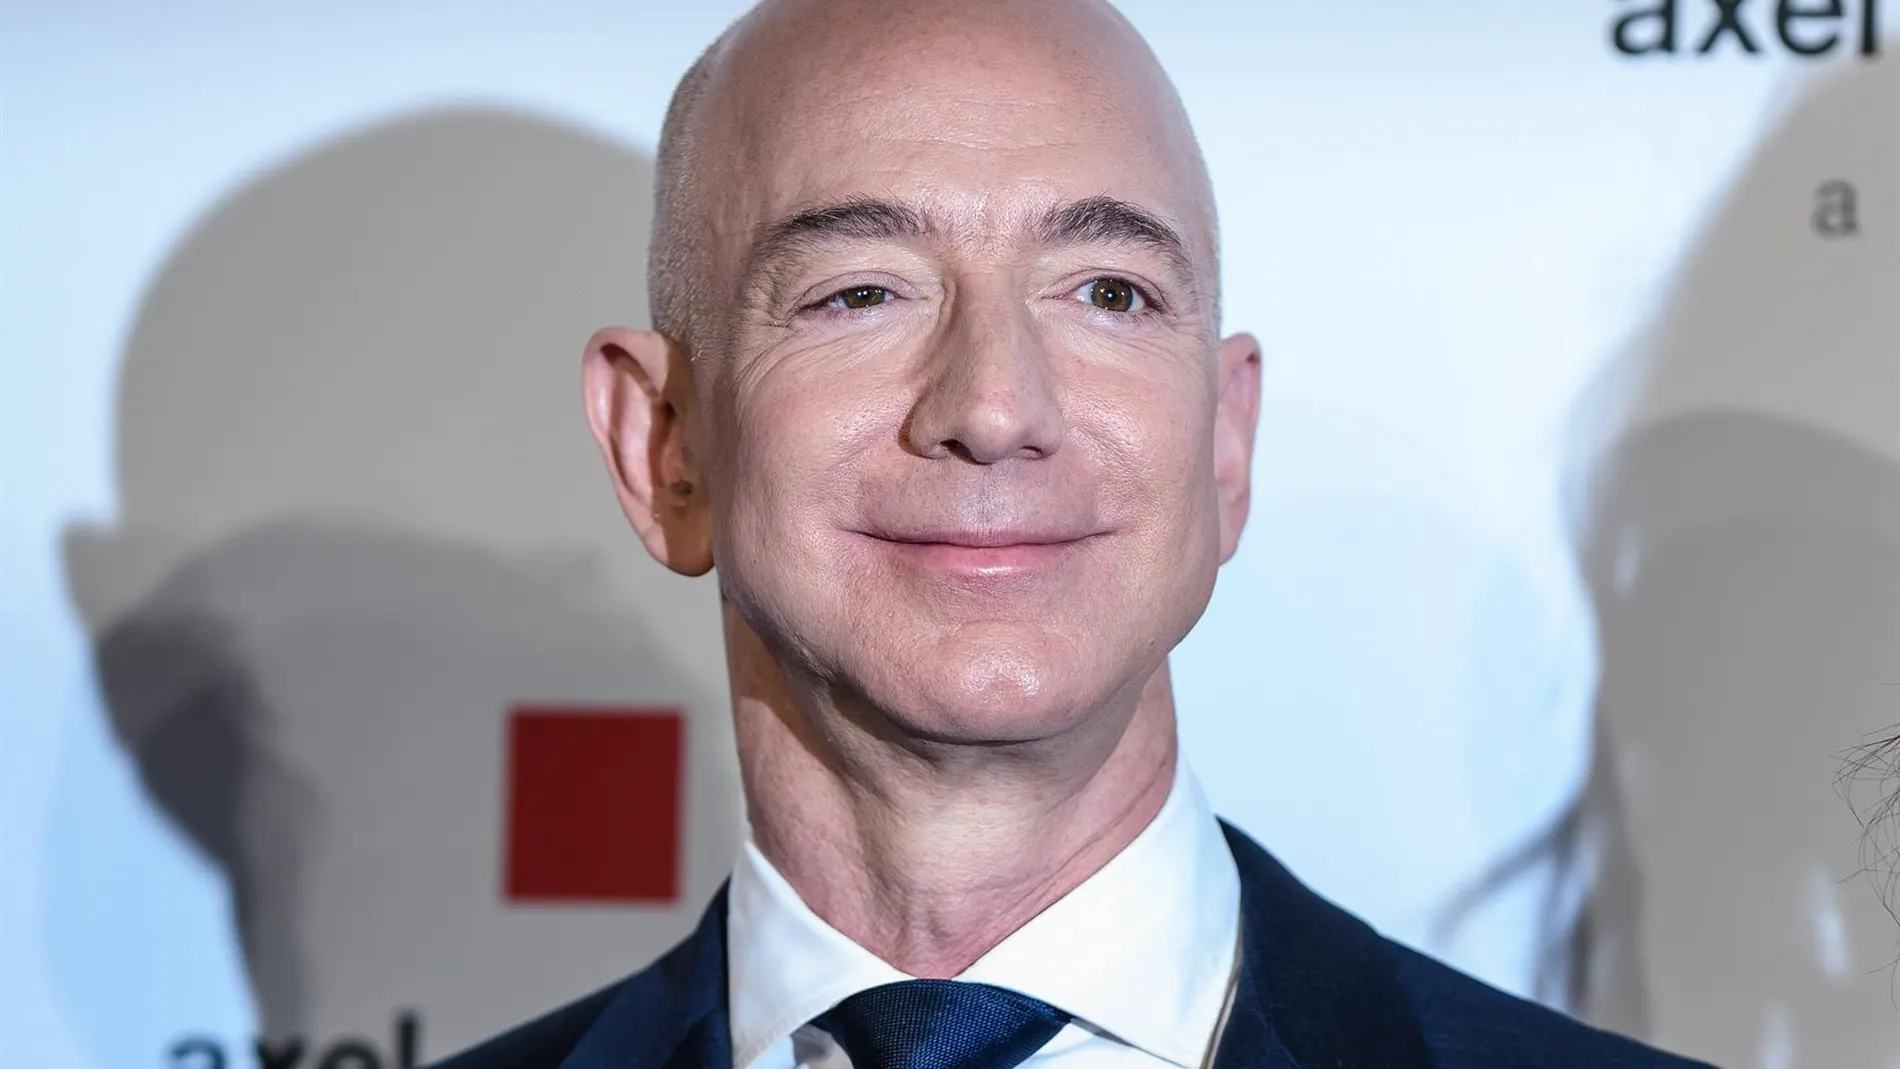 El fundador de Amazon Jeff Bezos viajará al espacio el próximo 20 de julio